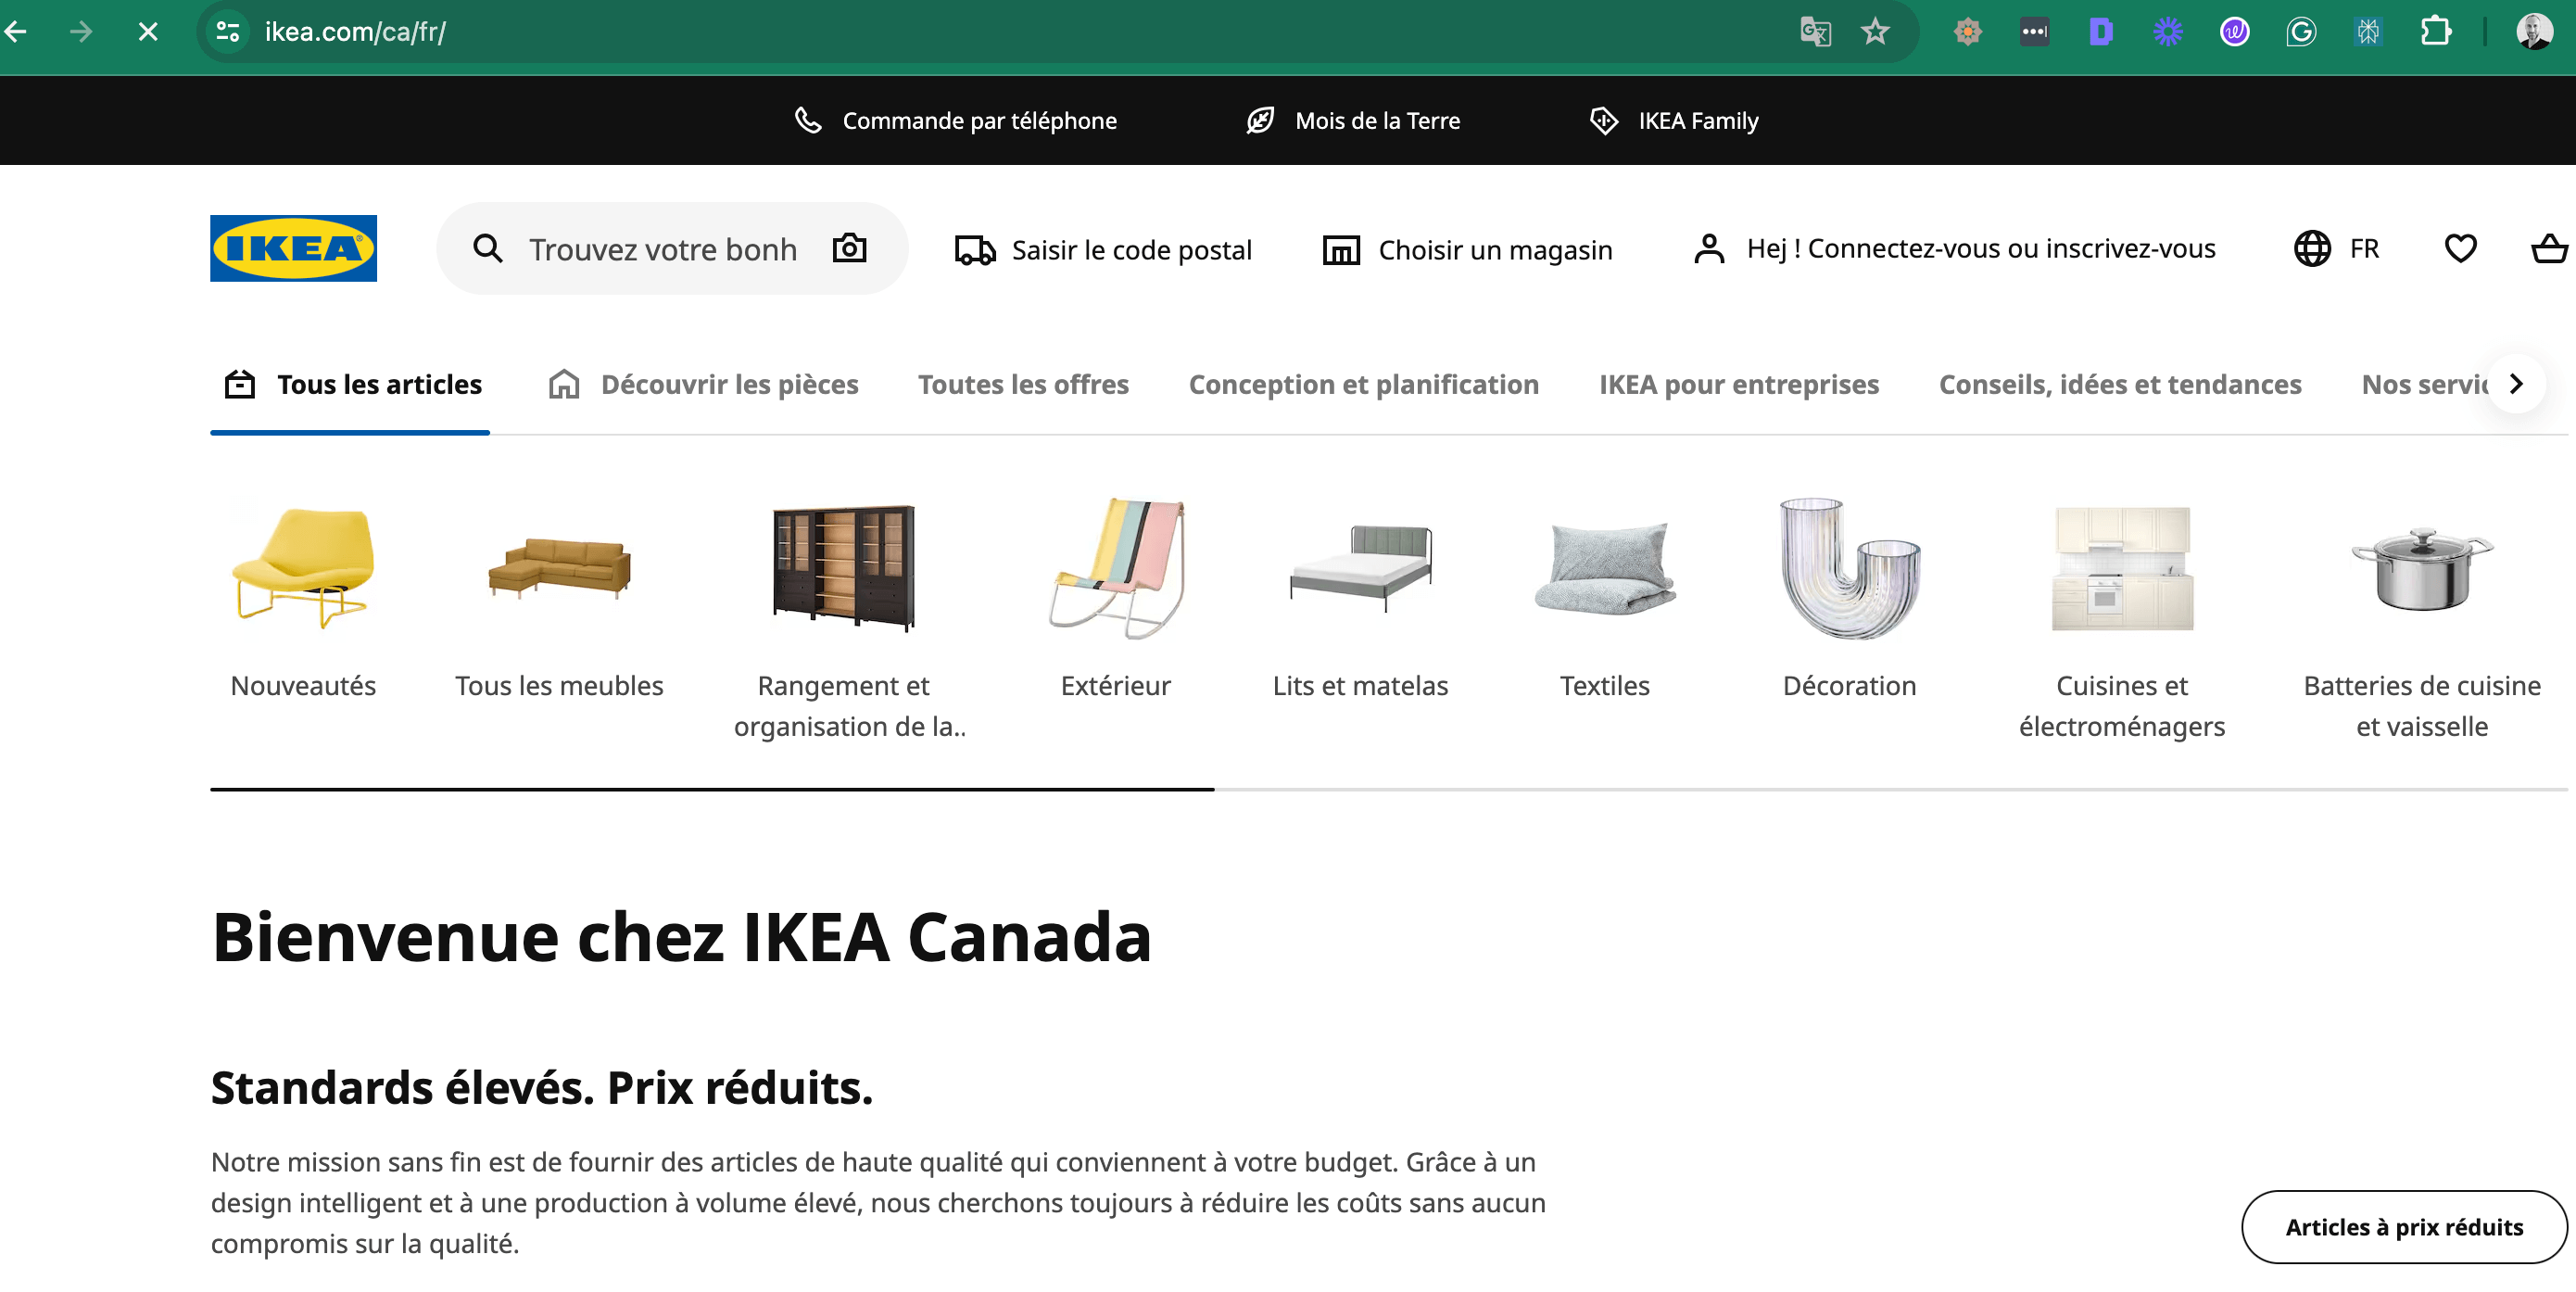 IKEA website including URL structure